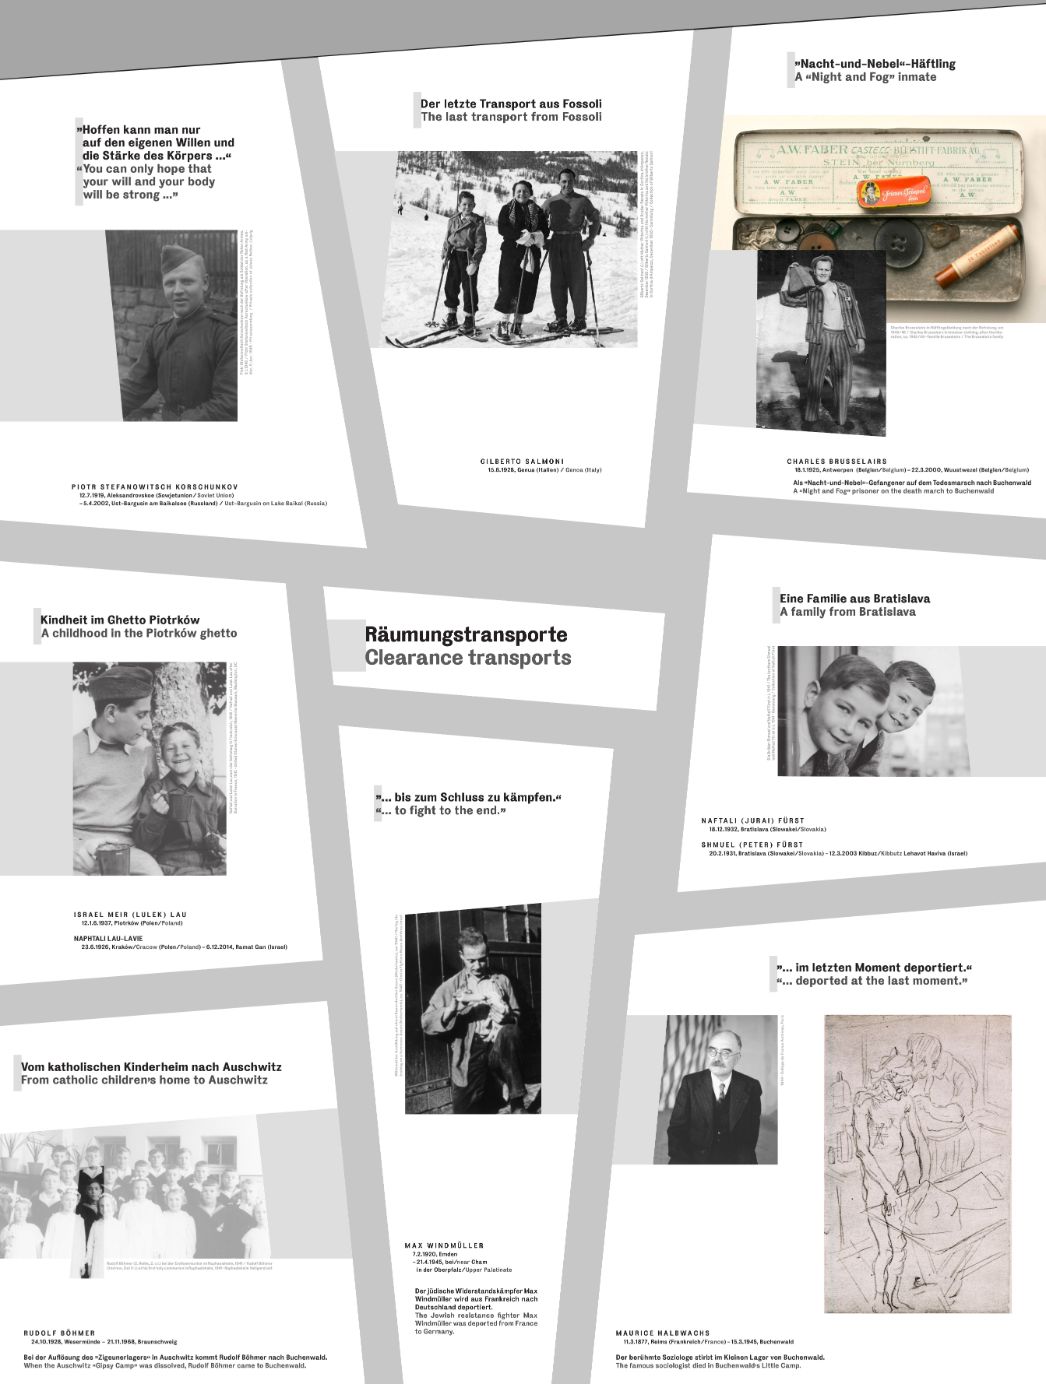 Grafik zu den Biografien "Räumungstransporte" mit Fotos, Namen und Lebensdaten.